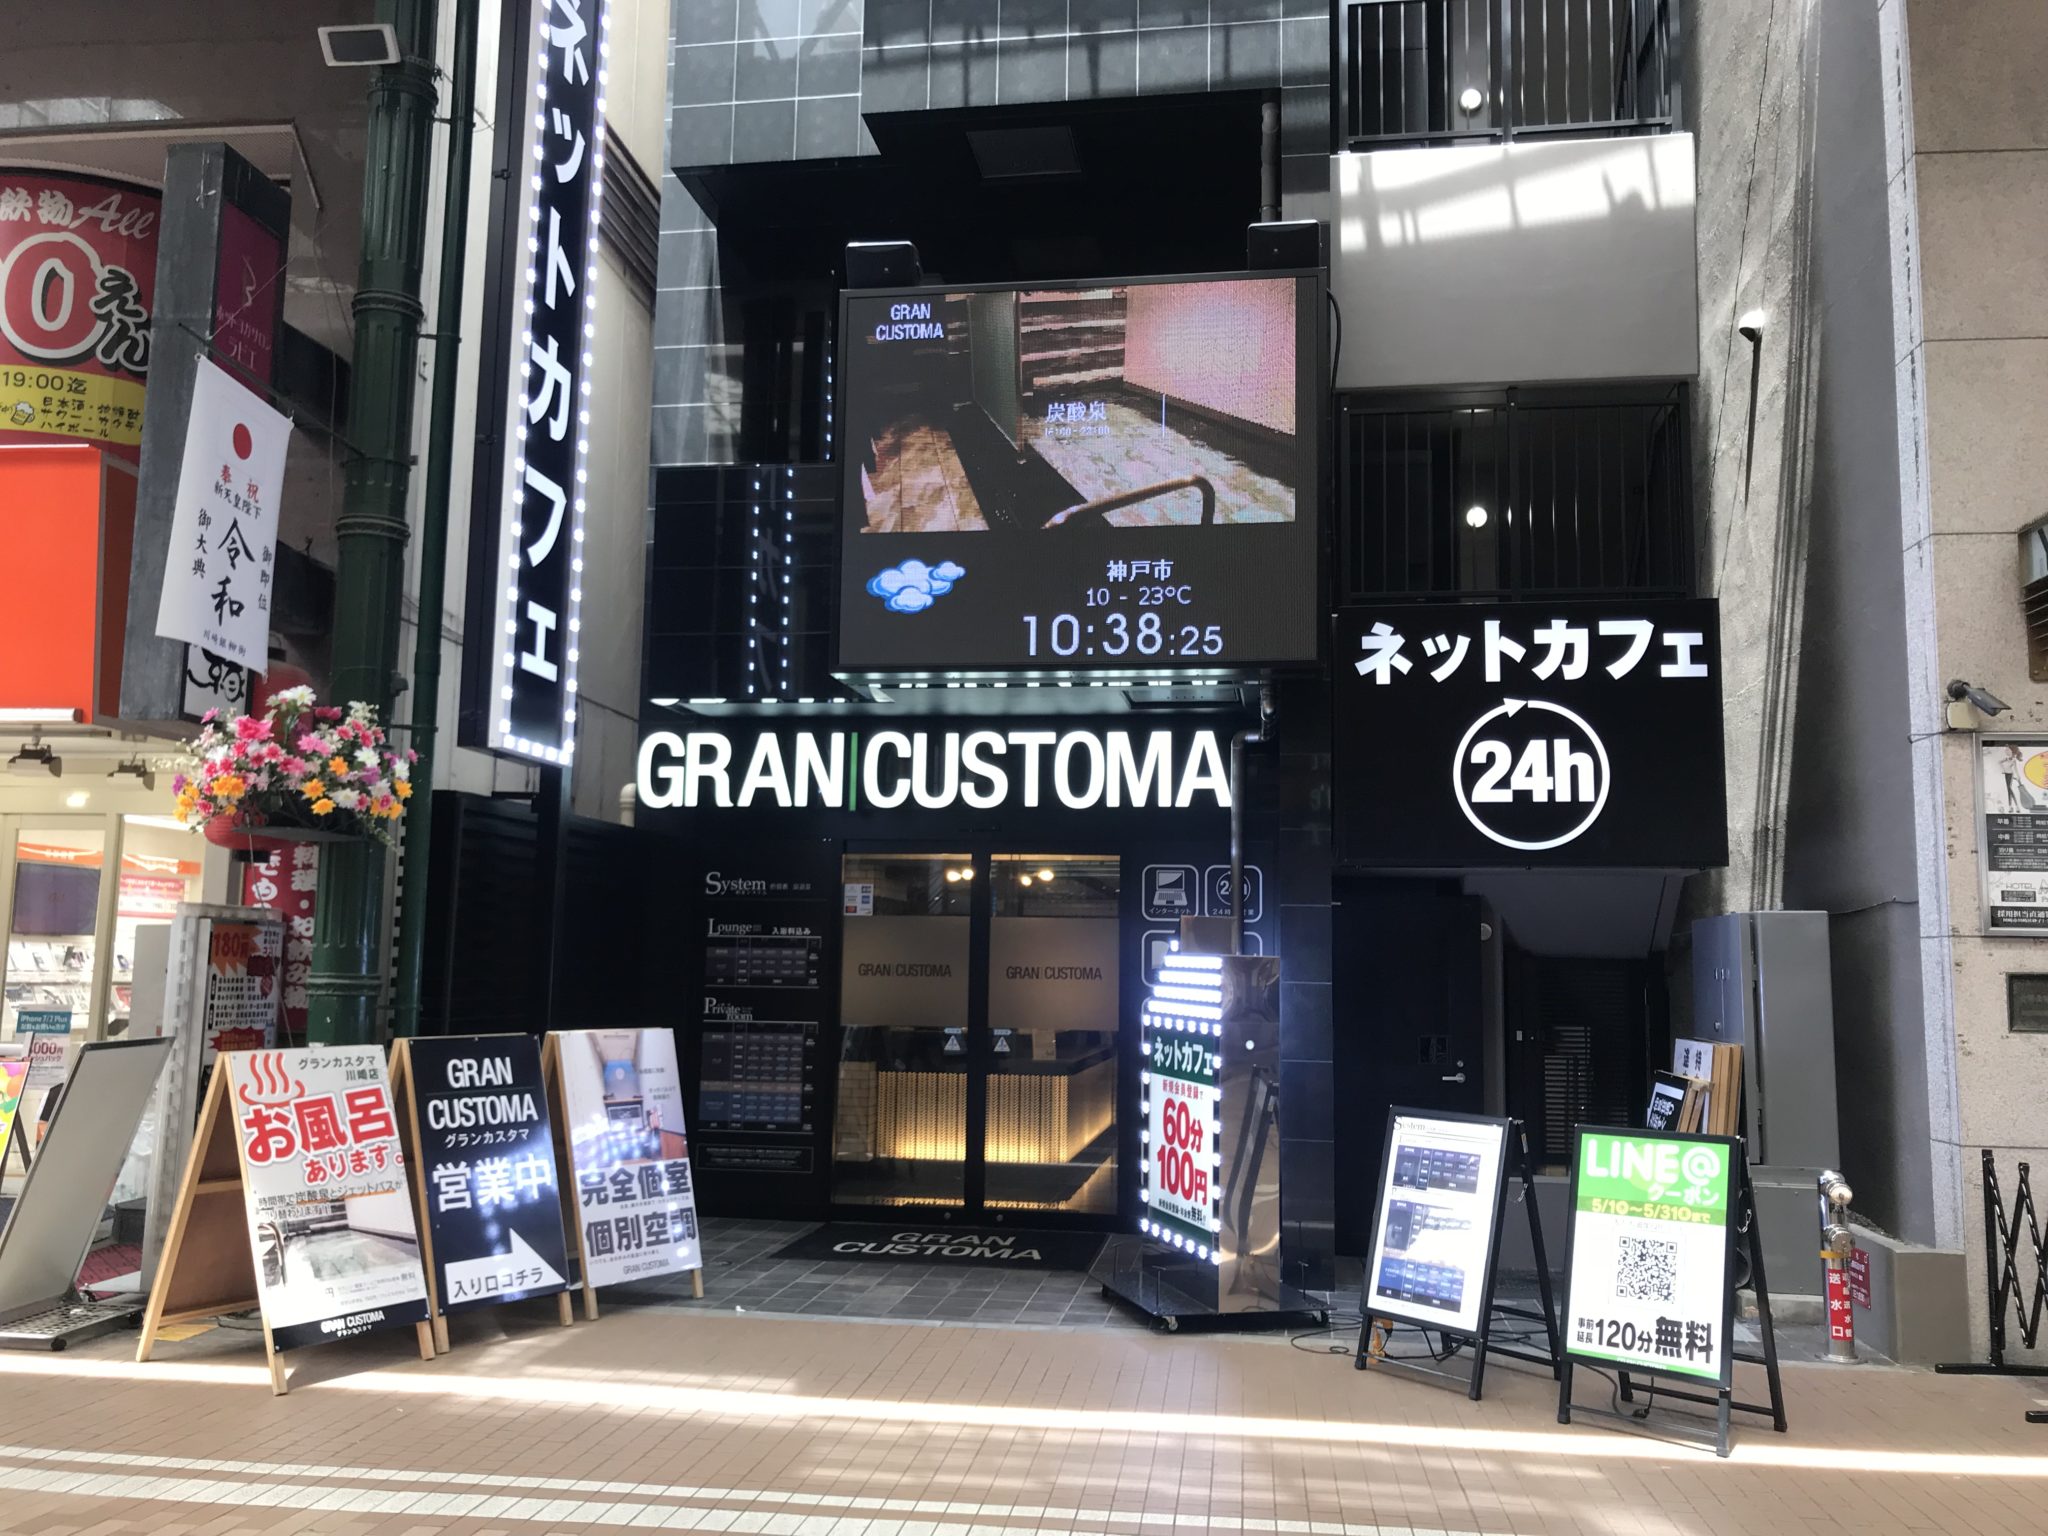 川崎駅から徒歩3分 Gran Customa 川崎店をレポート 日本全国のネカフェ 漫画喫茶マップのヒマップ